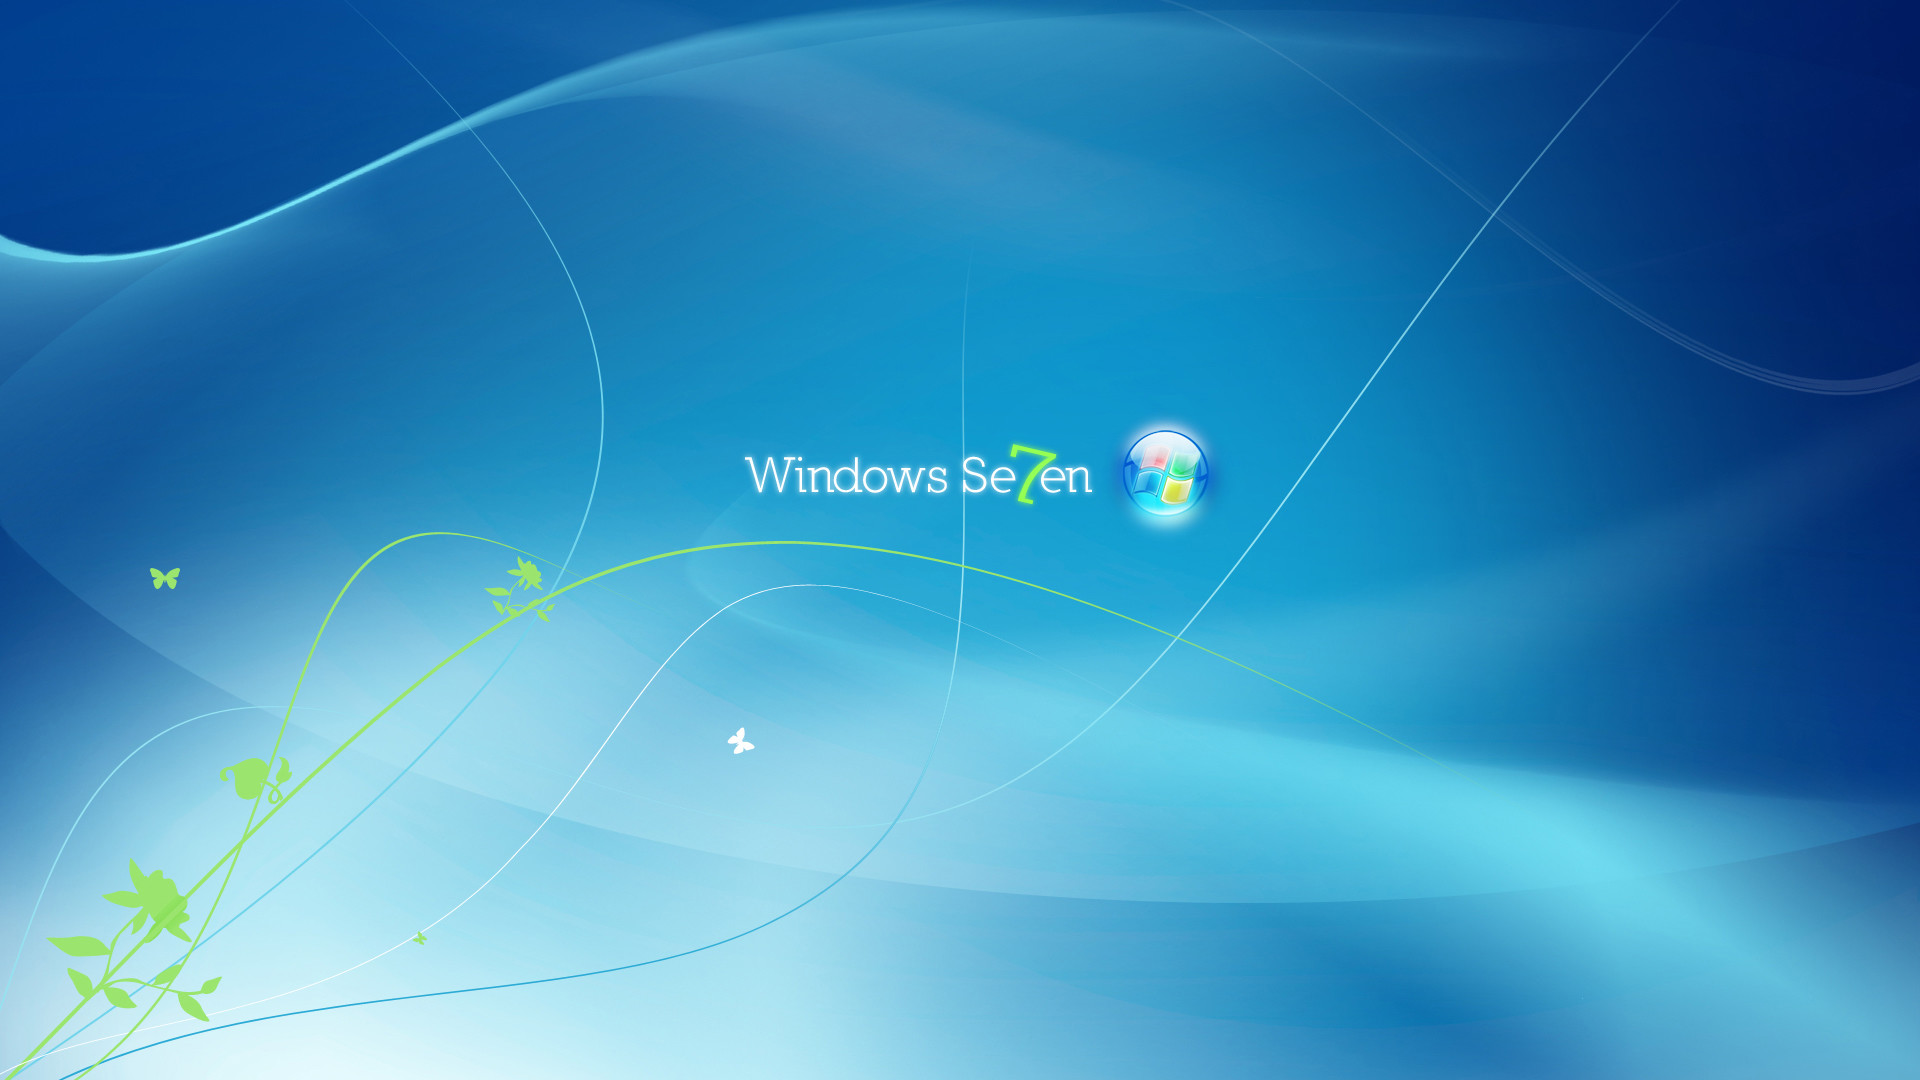 Фоны рабочего стола windows изменить. Фоновые изображения для рабочего стола Windows 7. Фон Windows 7. Заставка на рабочий стол стандартная. Обои на рабочий стол виндовс 7.